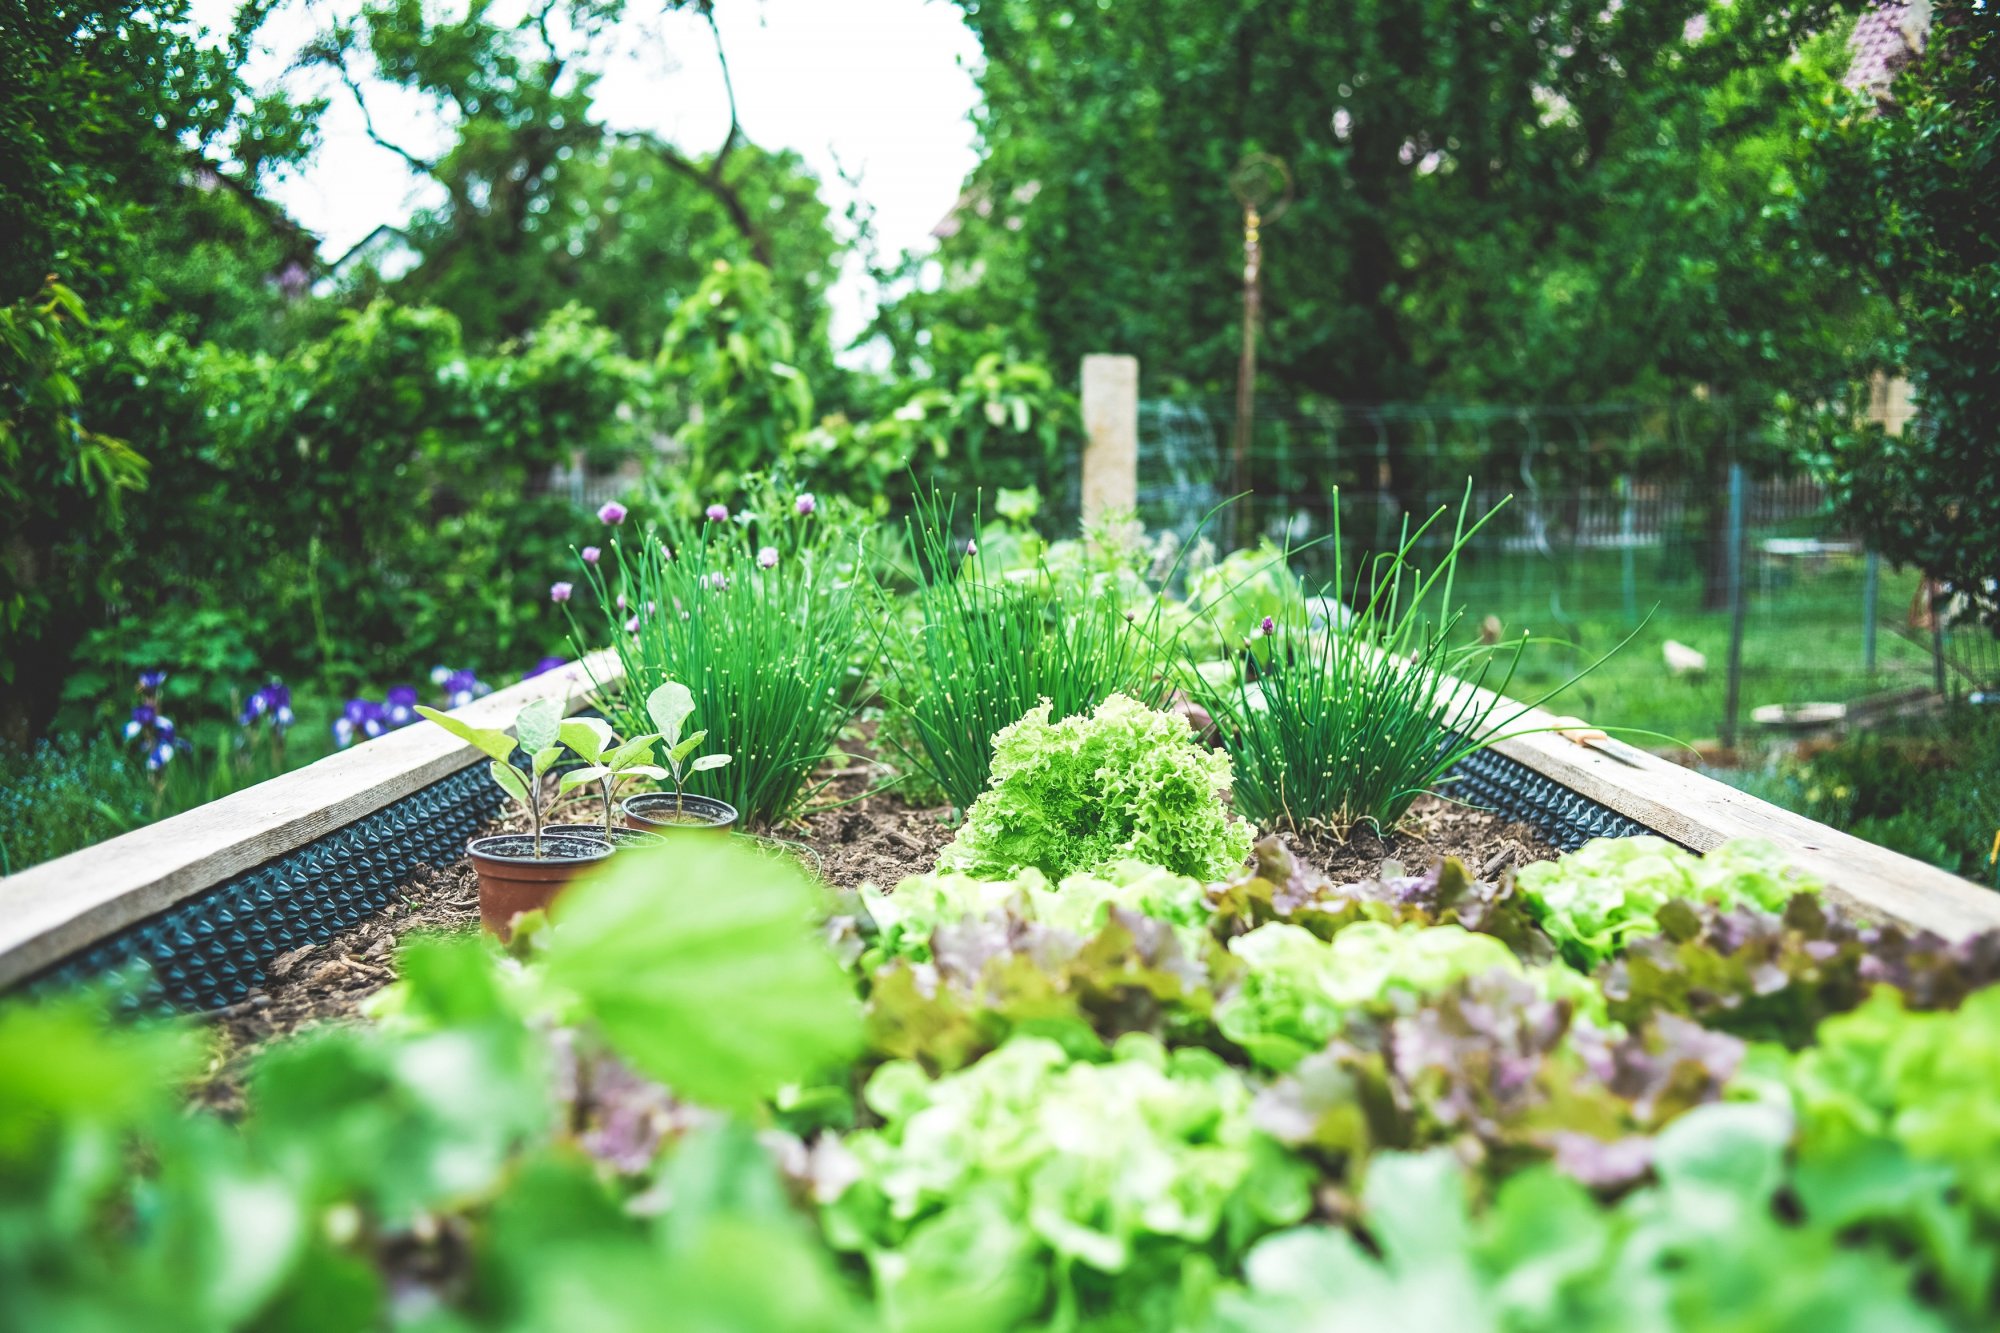 Πώς μια γυναίκα αύξησε την περιουσία της καλλιεργώντας λαχανικά στον κήπο της